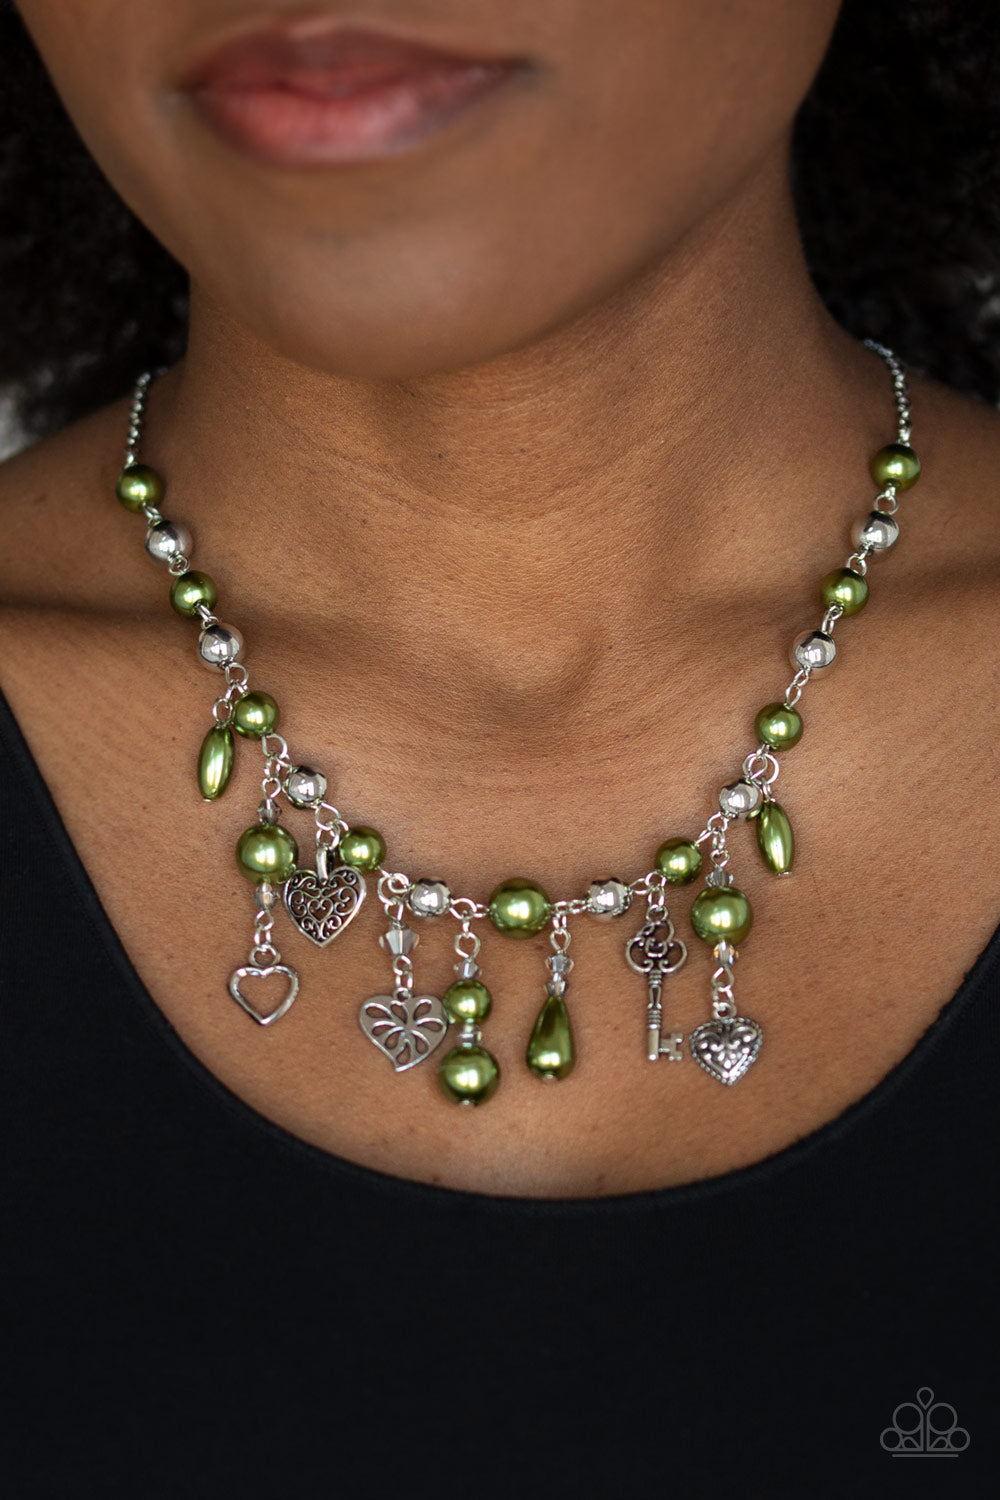 Renaissance Romance - Green necklace